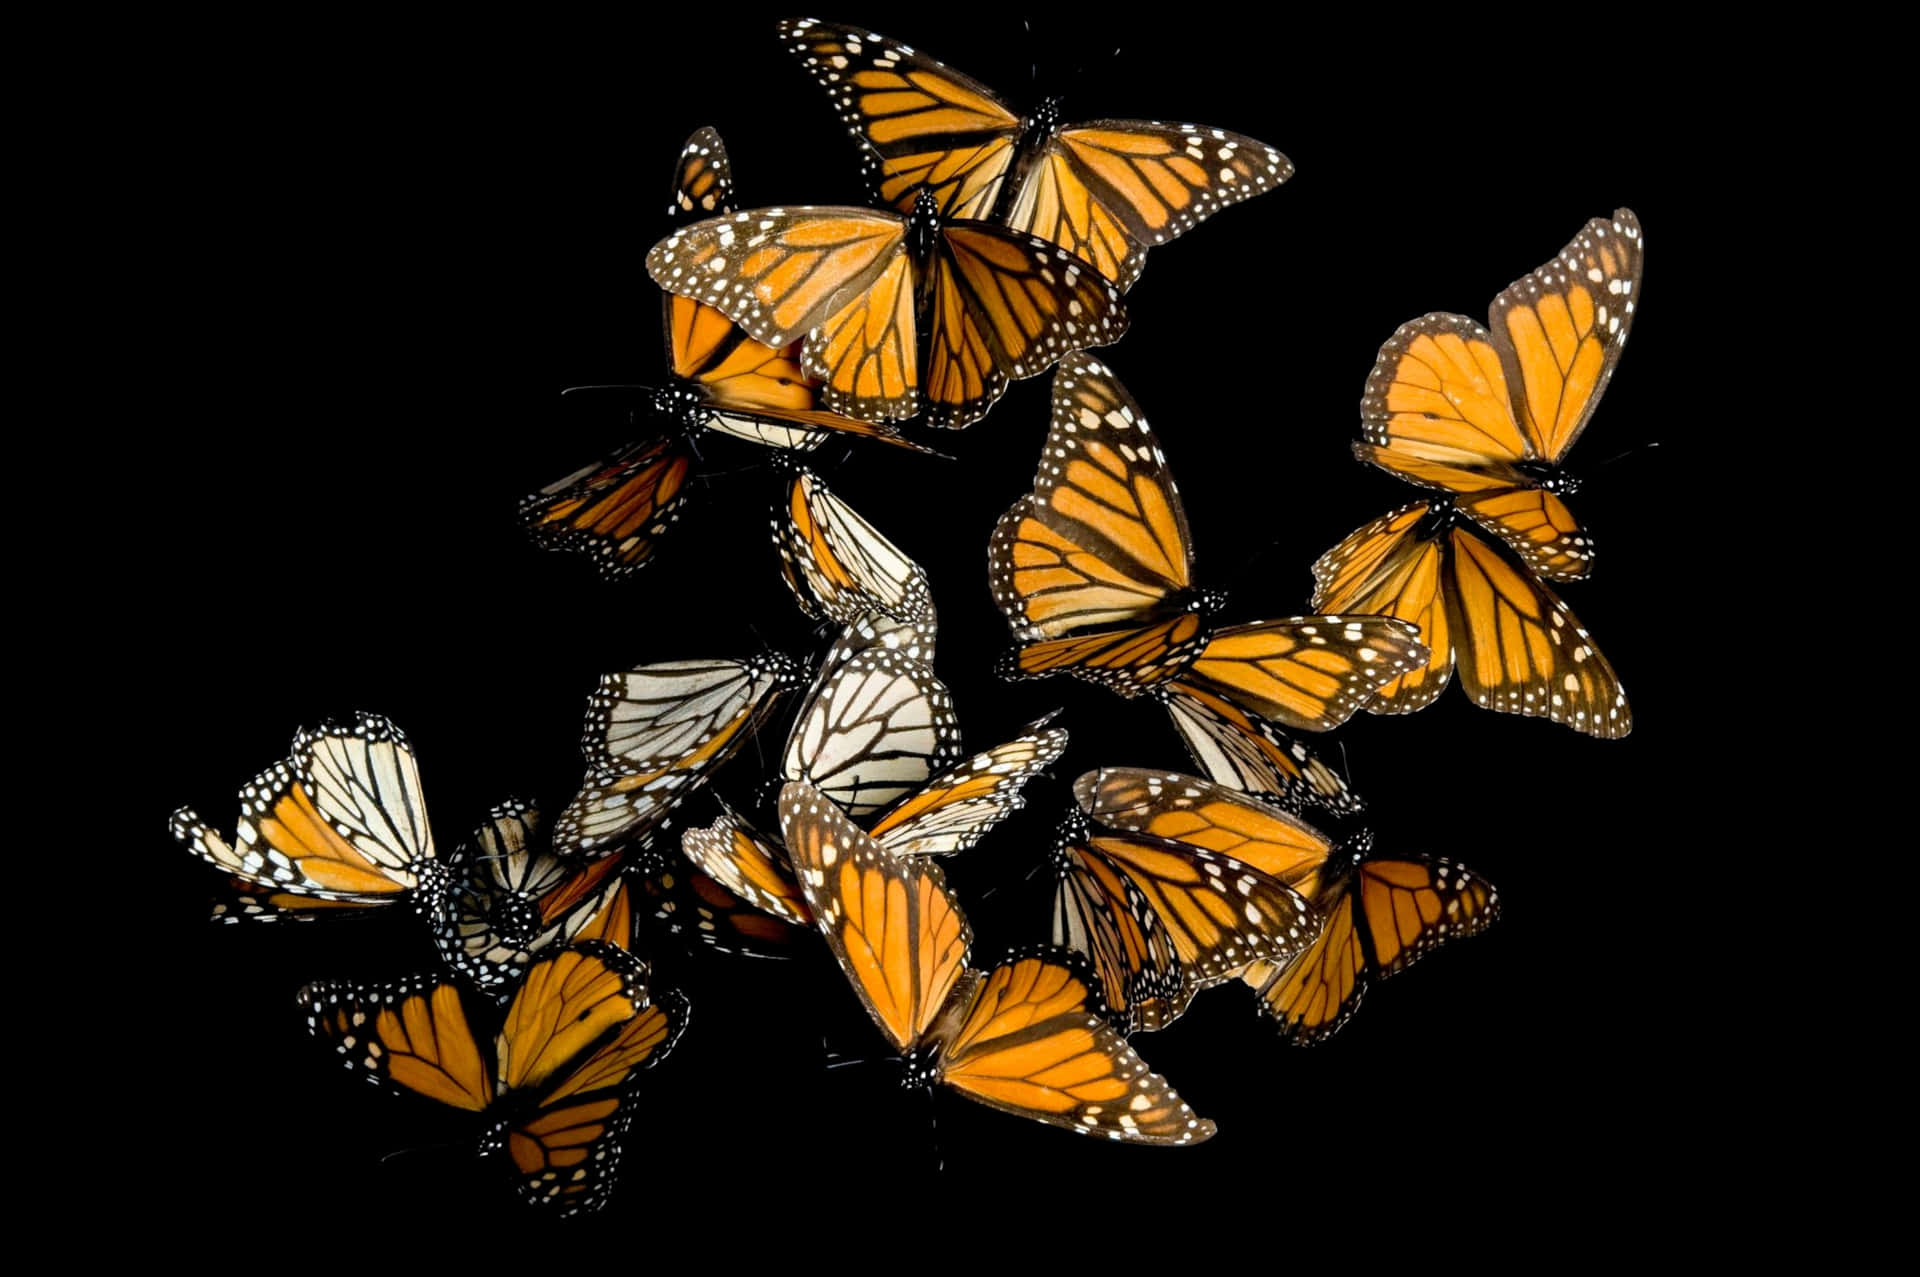 Ungrupo De Mariposas Monarca Volando En El Aire